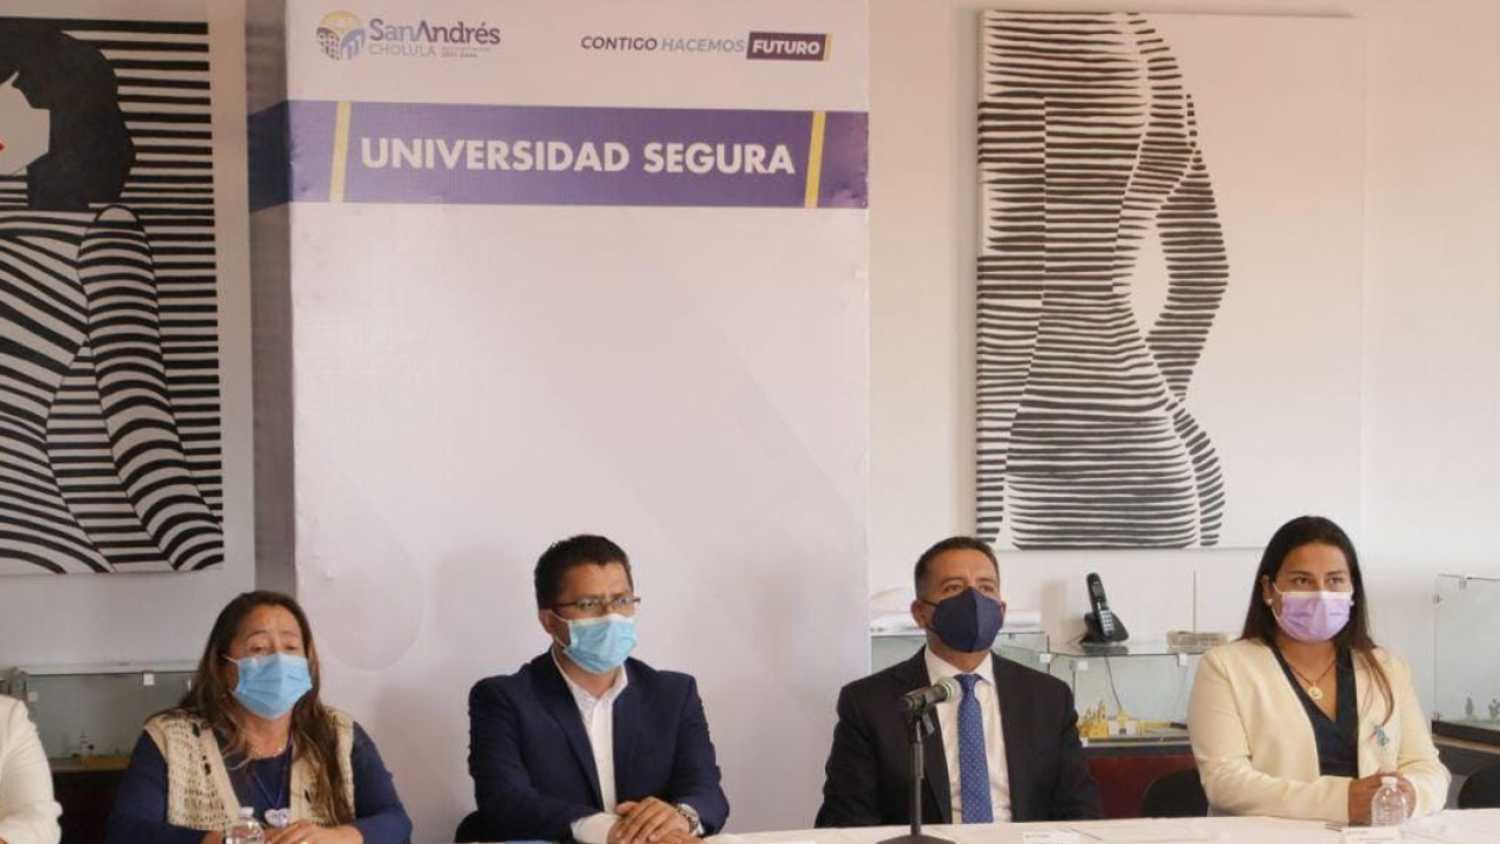 Ayuntamiento de San Andrés Cholula pondrá en marcha la estrategia “Universidad Segura” 